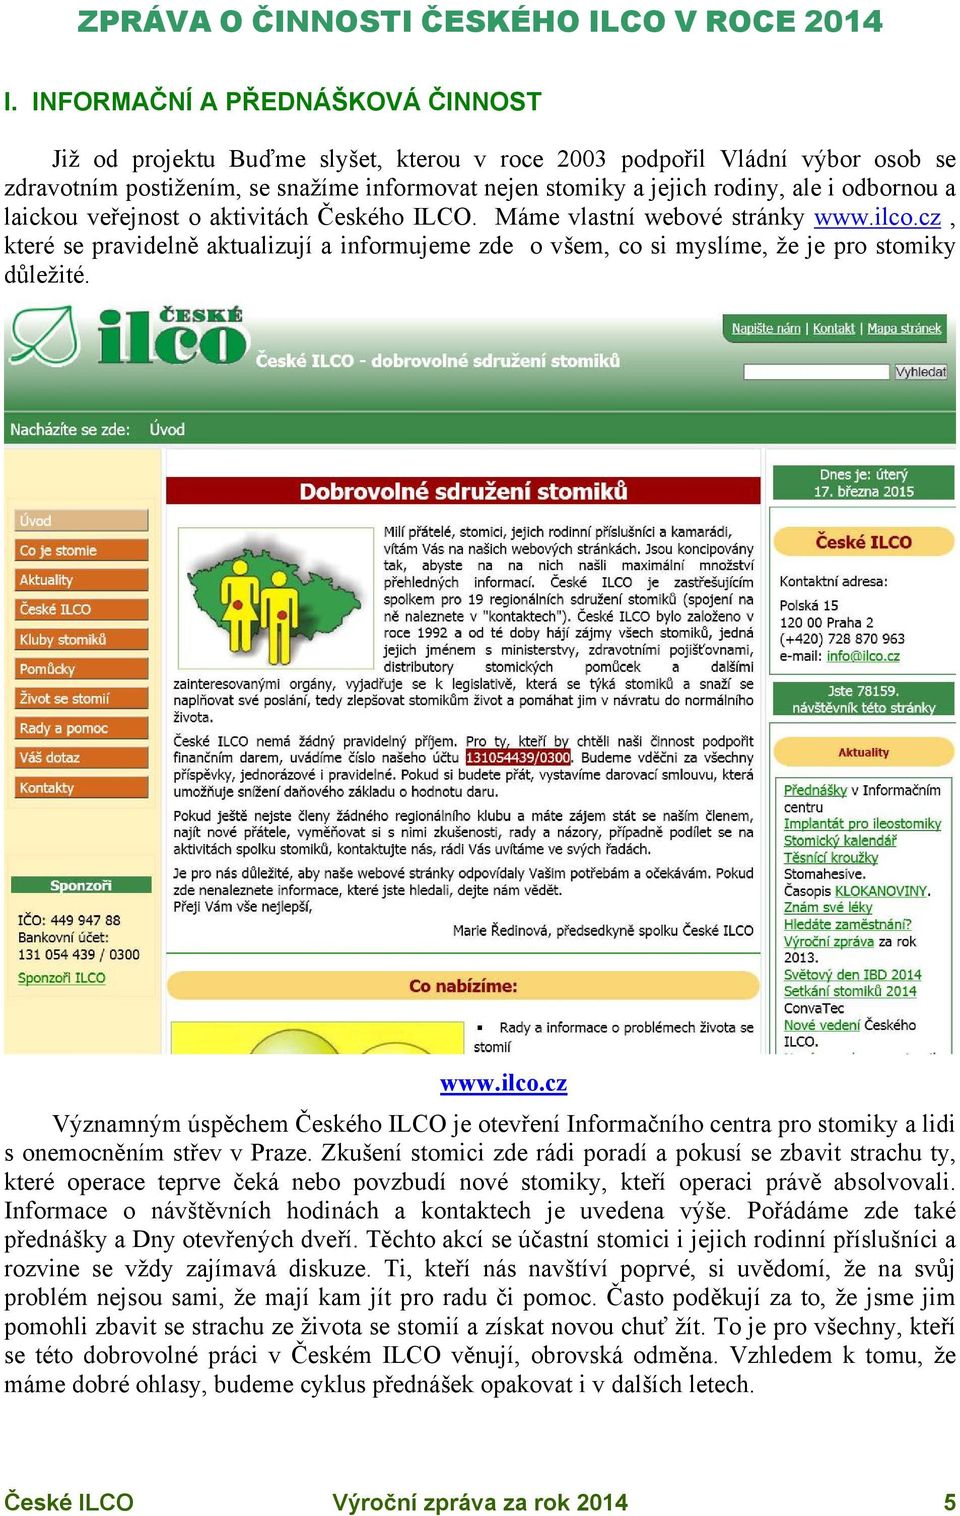 odbornou a laickou veřejnost o aktivitách Českého ILCO. Máme vlastní webové stránky www.ilco.cz, které se pravidelně aktualizují a informujeme zde o všem, co si myslíme, že je pro stomiky důležité.